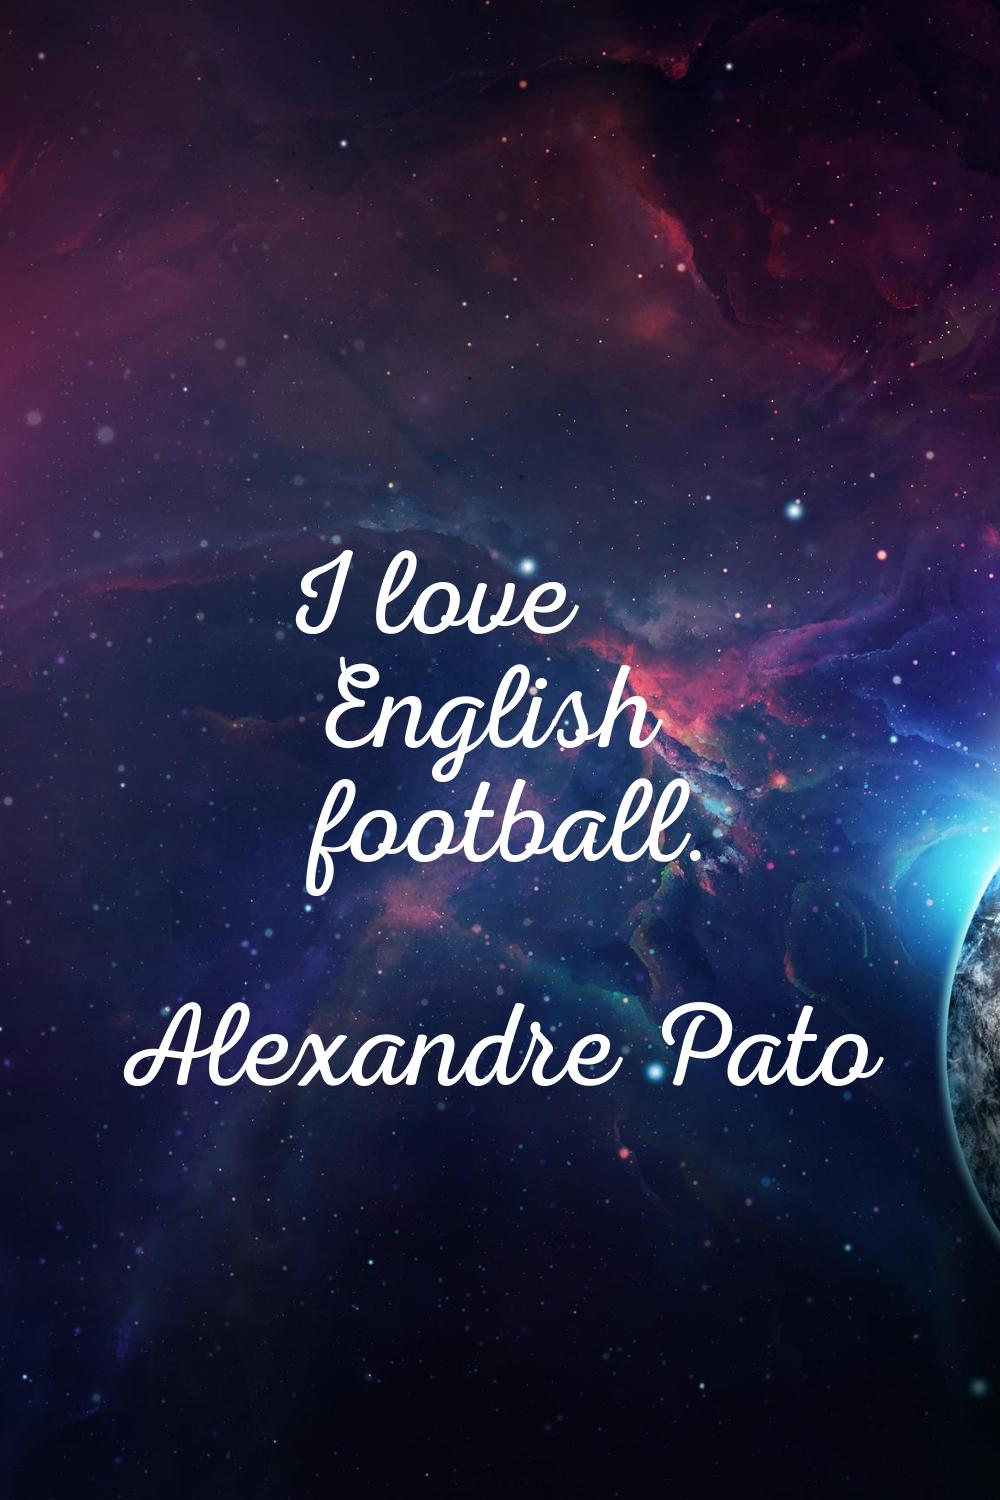 I love English football.